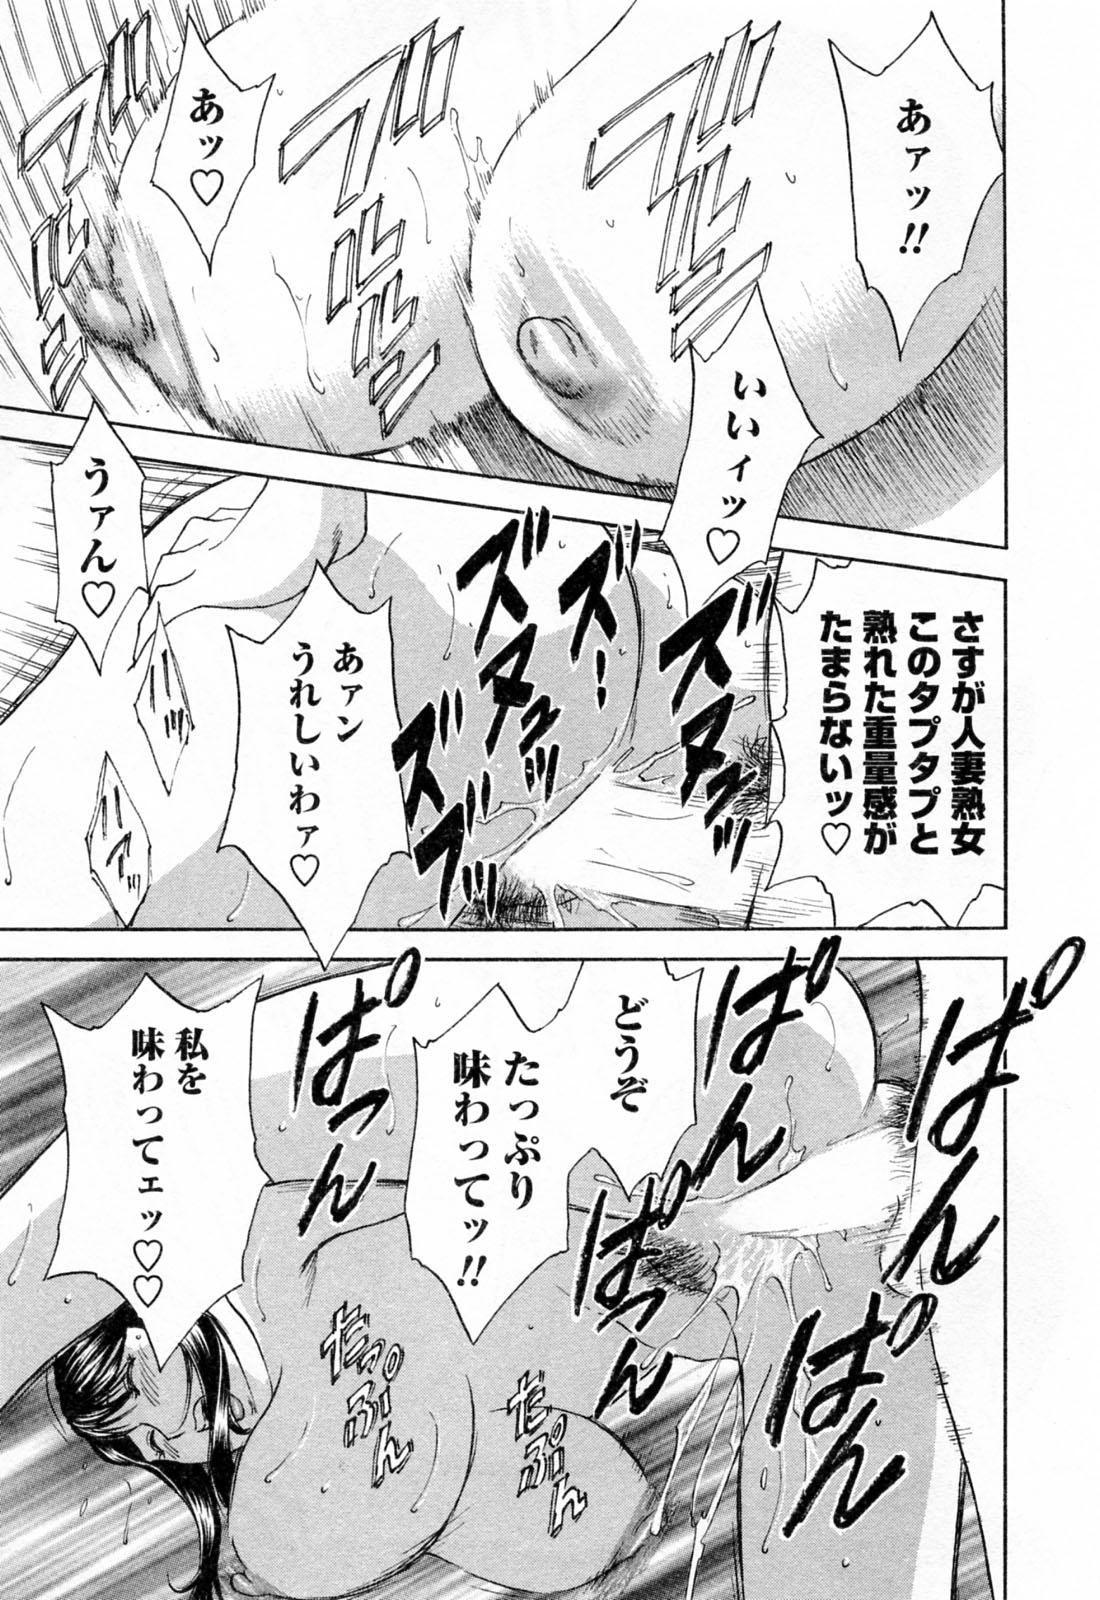 [Hidemaru] Mo-Retsu! Boin Sensei (Boing Boing Teacher) Vol.4 70